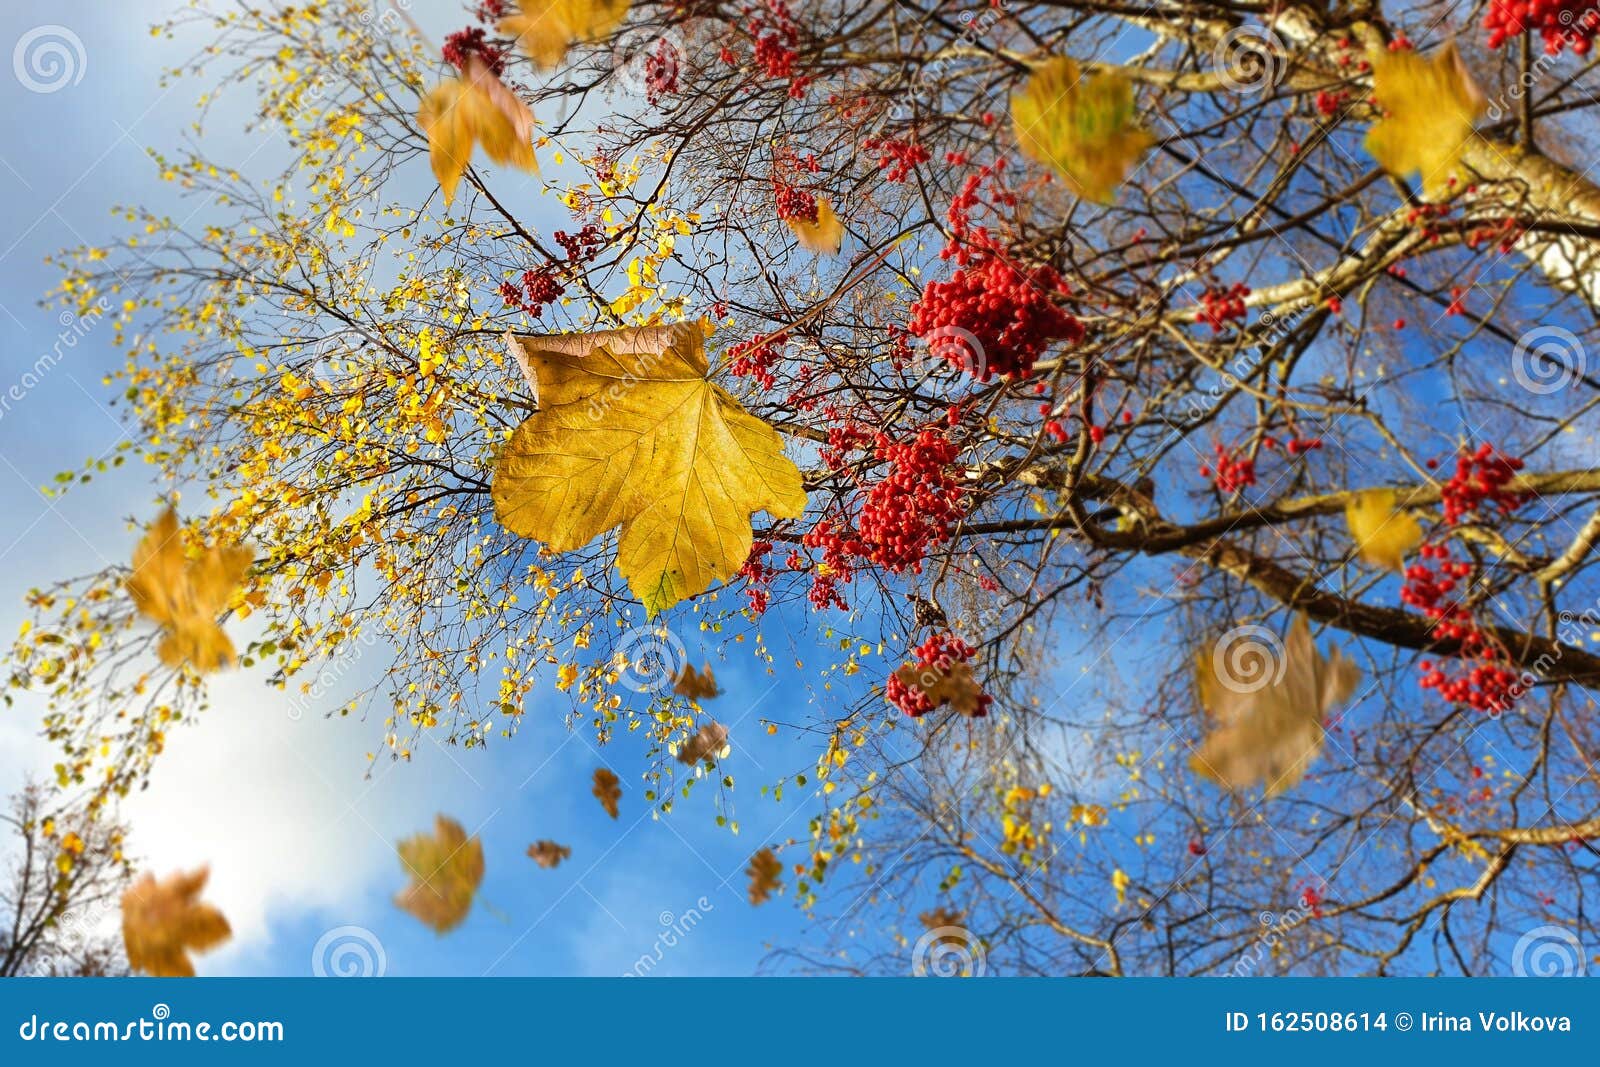 Wanneer beginnen fruitbomen bladeren te laten vallen in de herfst?